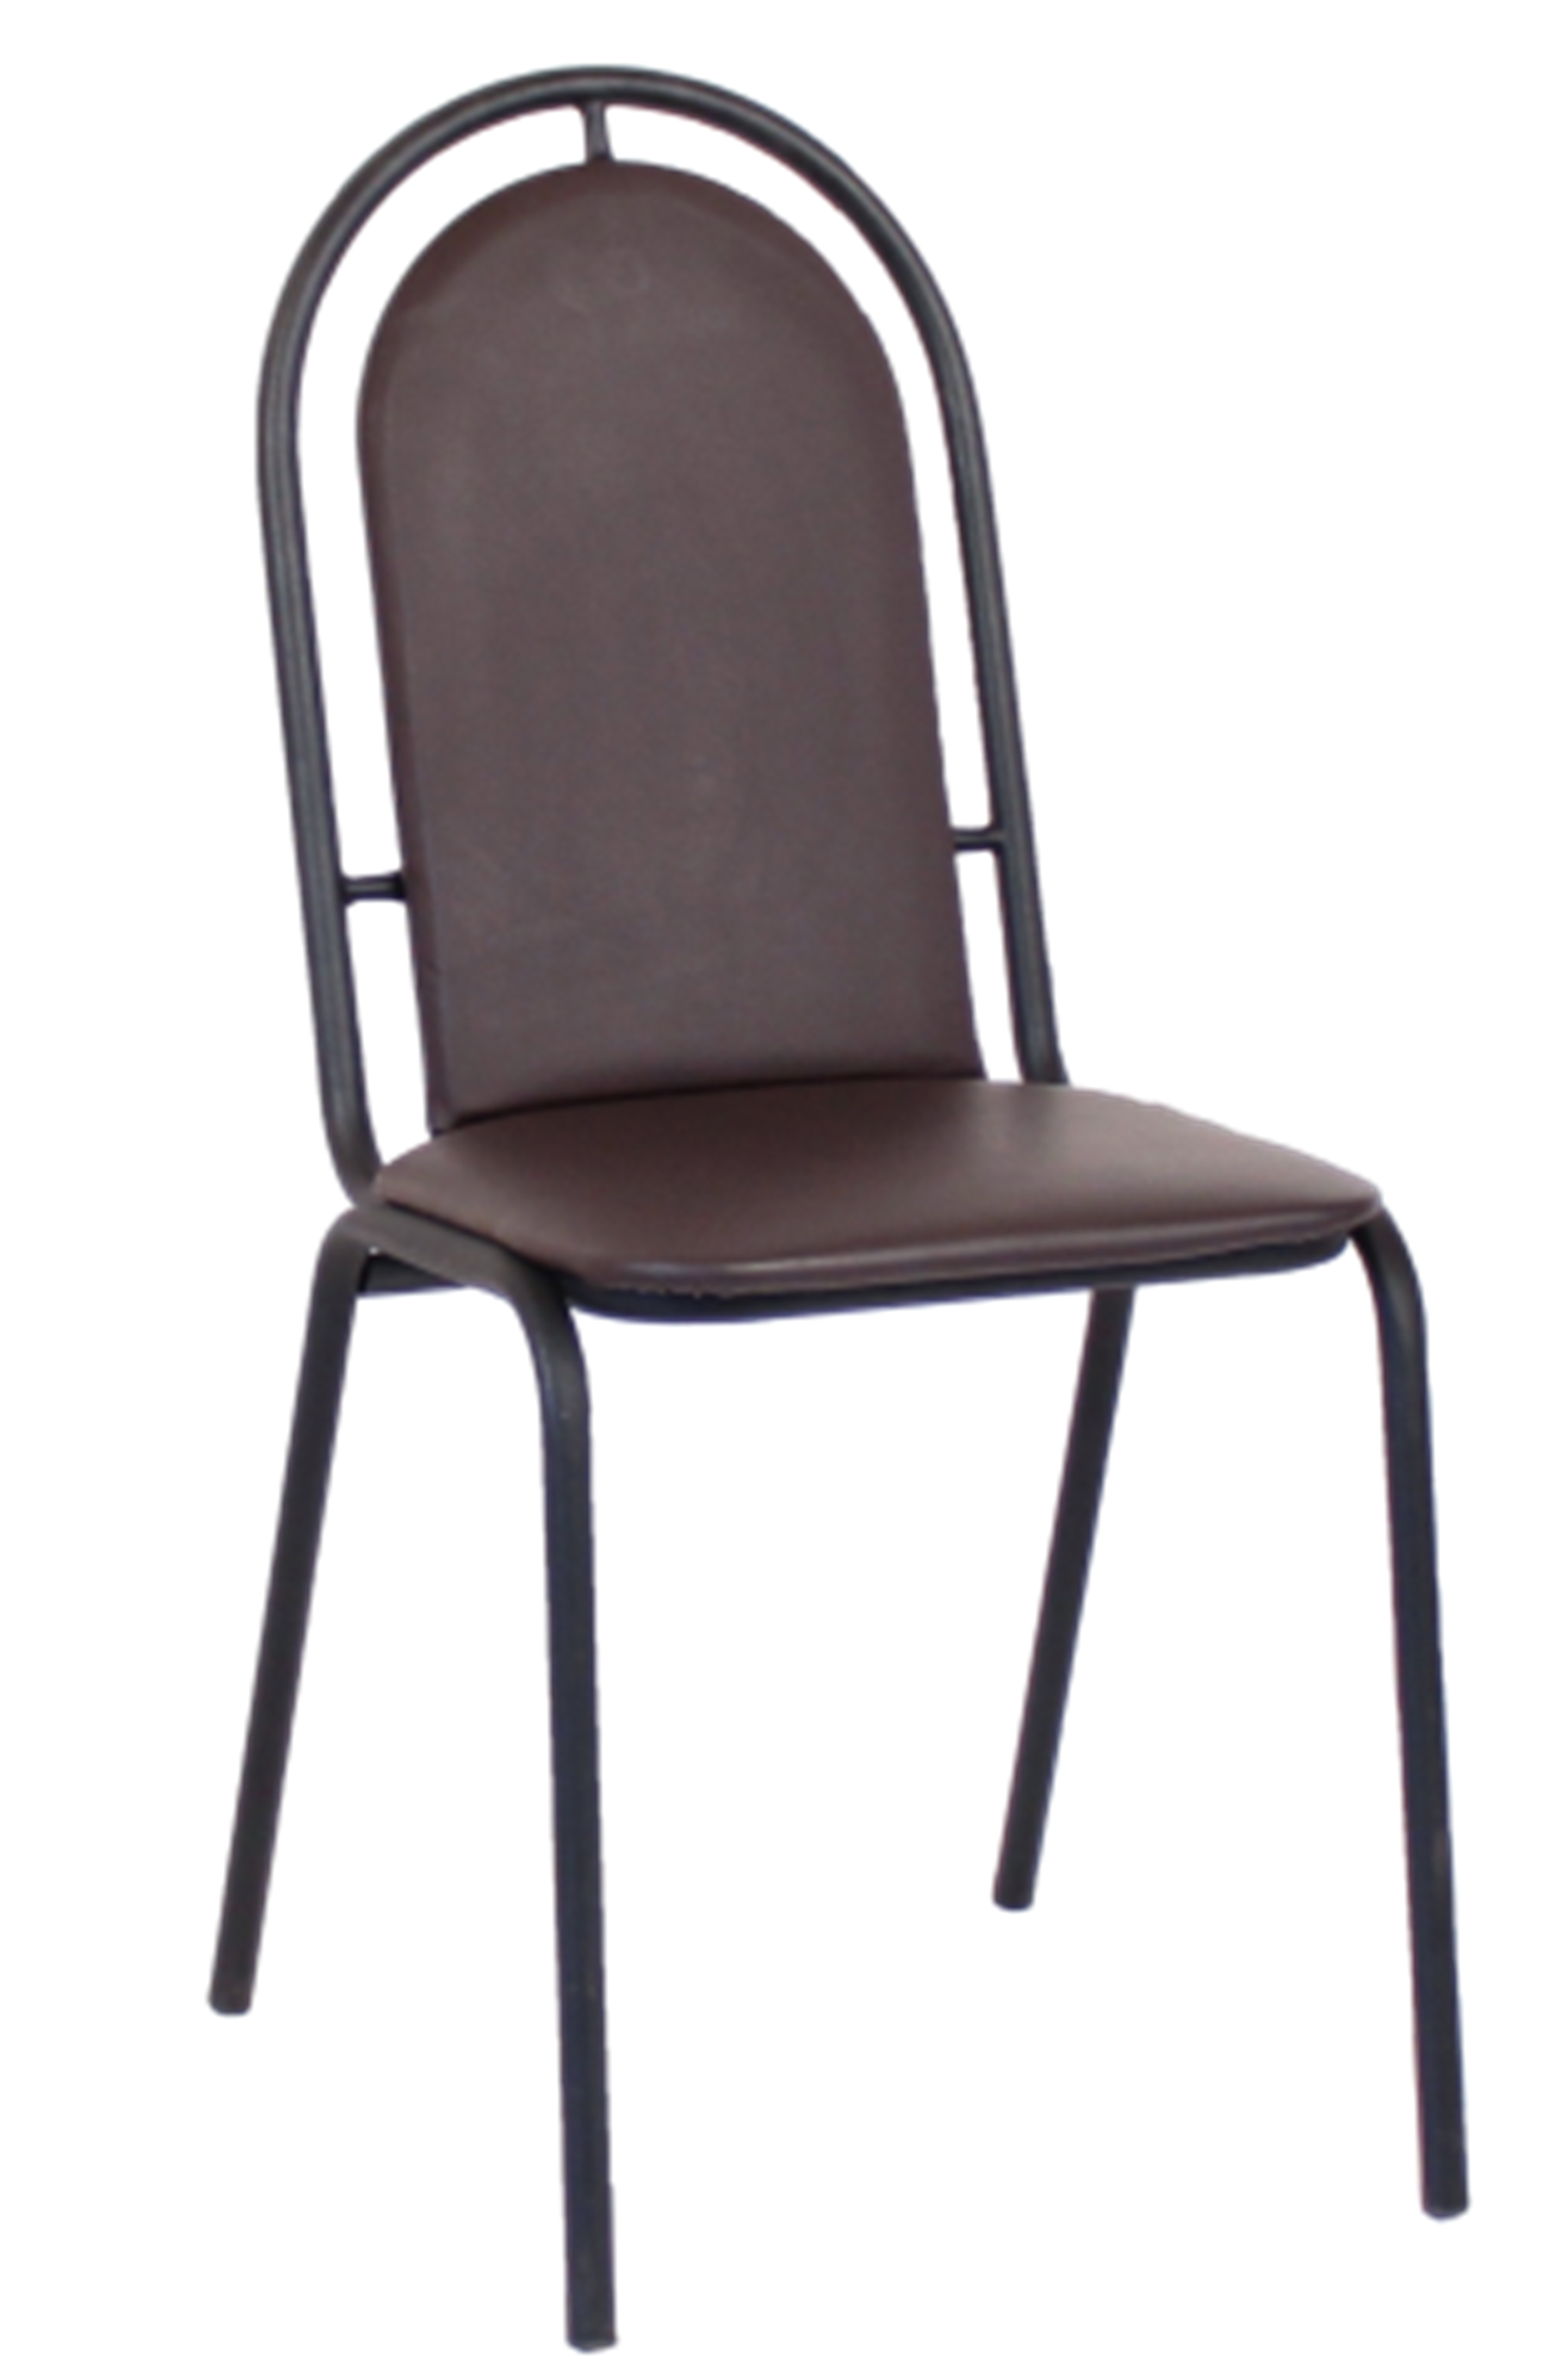 стул для посетителей рс02м